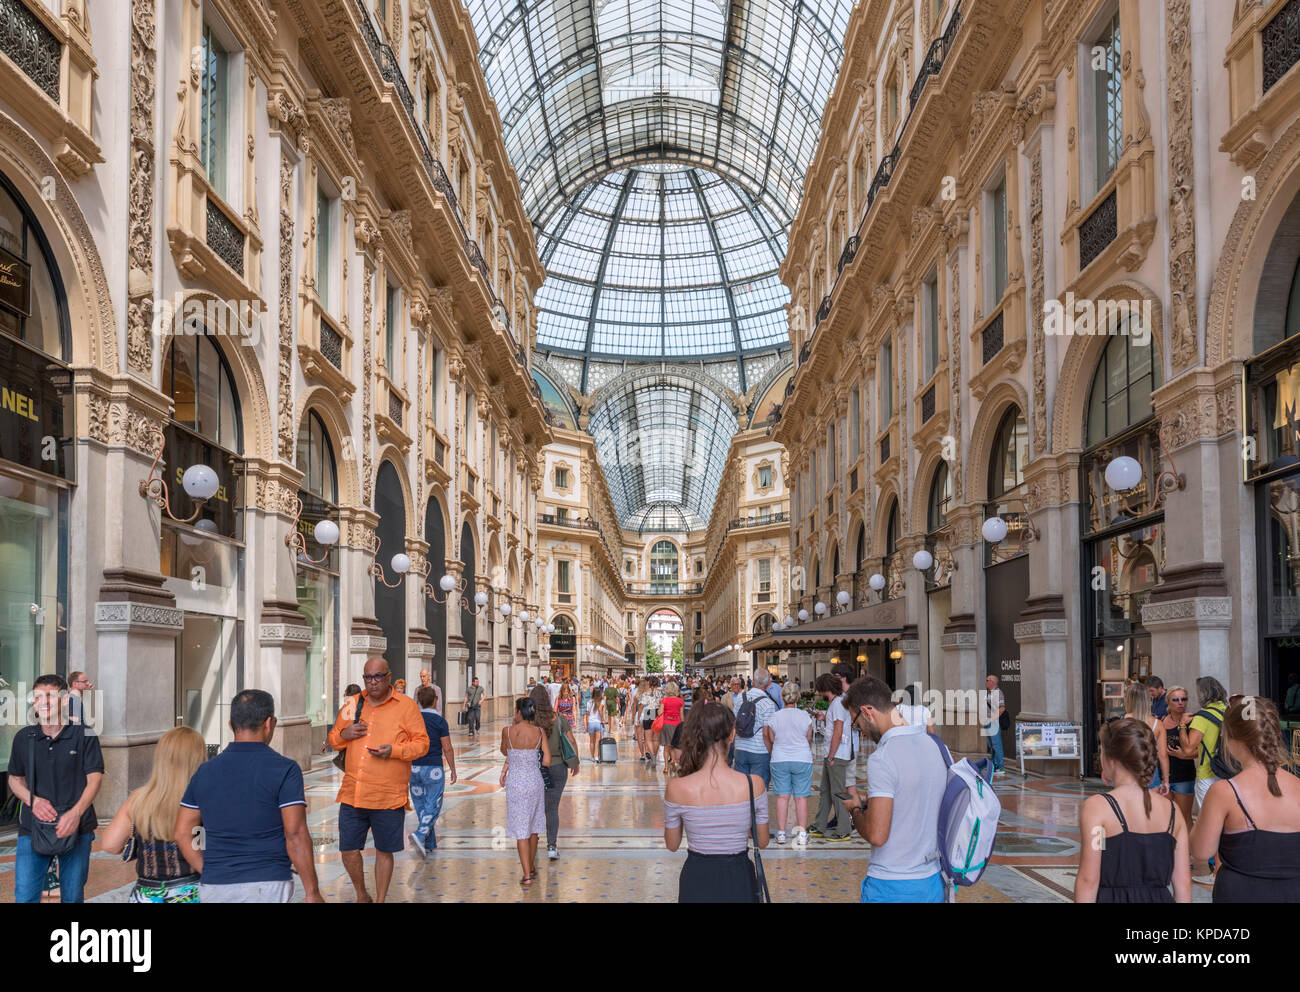 Negozi in Galleria Vittorio Emanuele II, uno storico centro commerciale per lo shopping nel centro della città di Milano, Lombardia, Italia Foto Stock